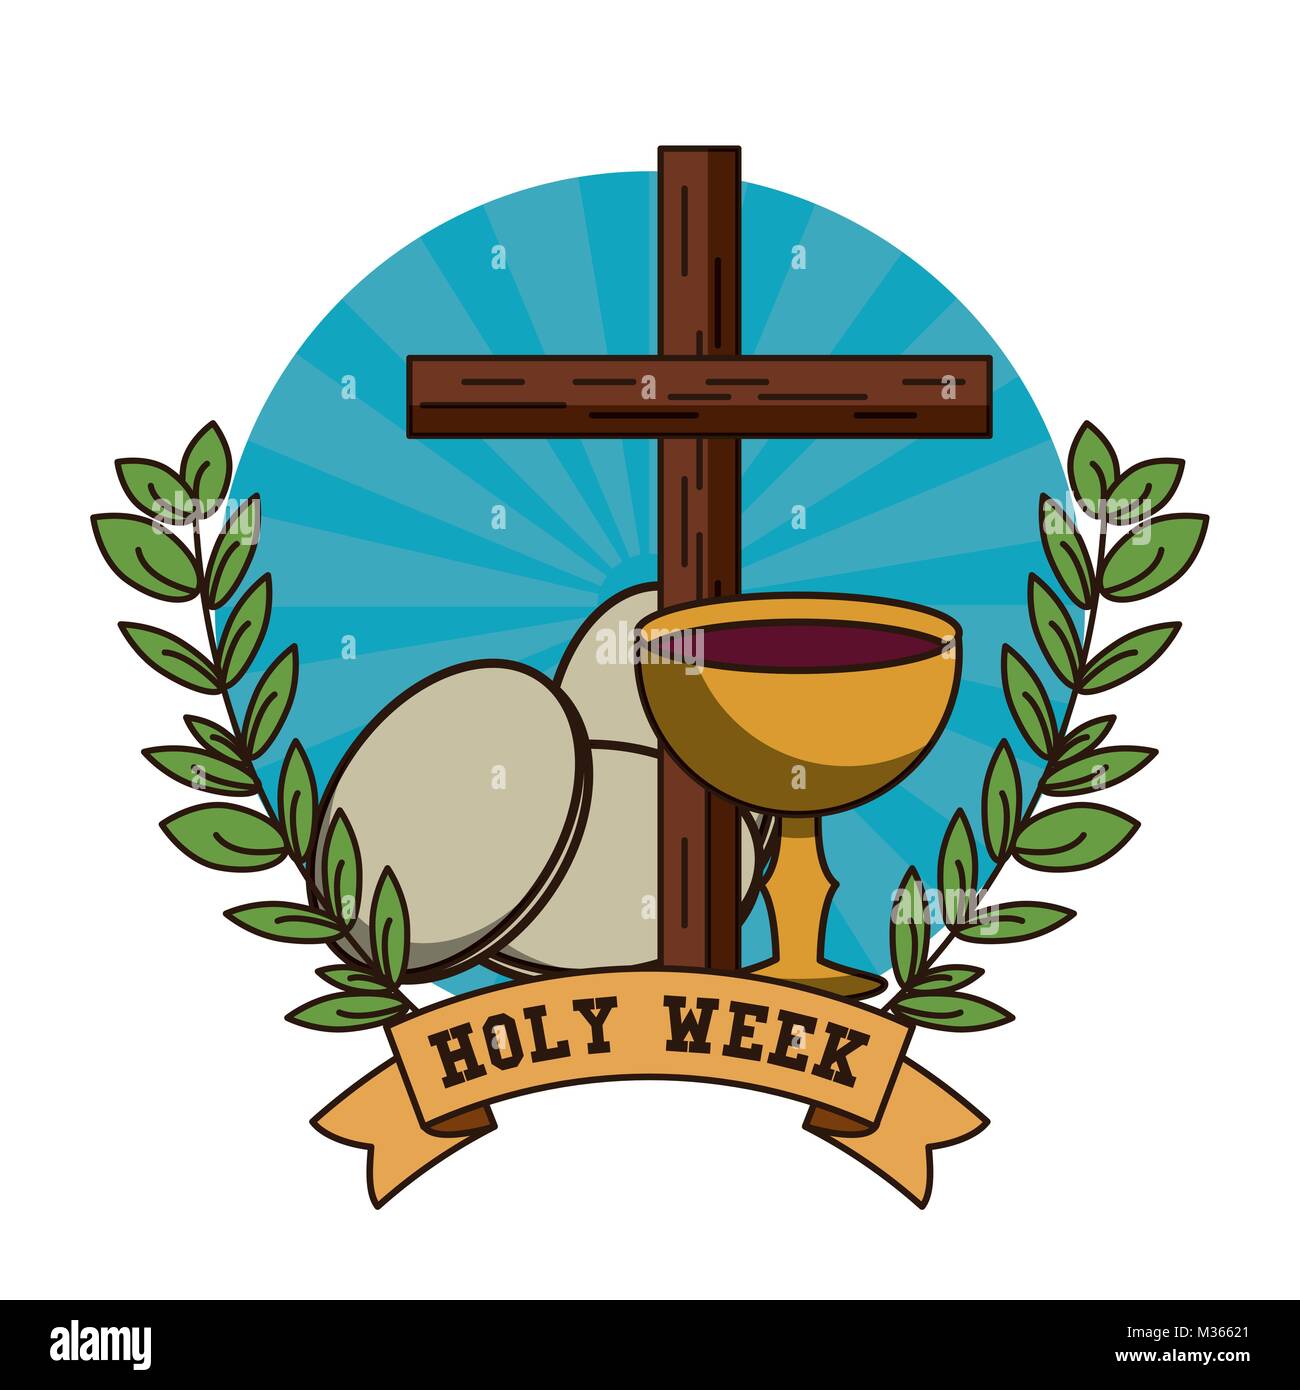 Holy week catholic tradition Stock Vector Image & Art - Alamy